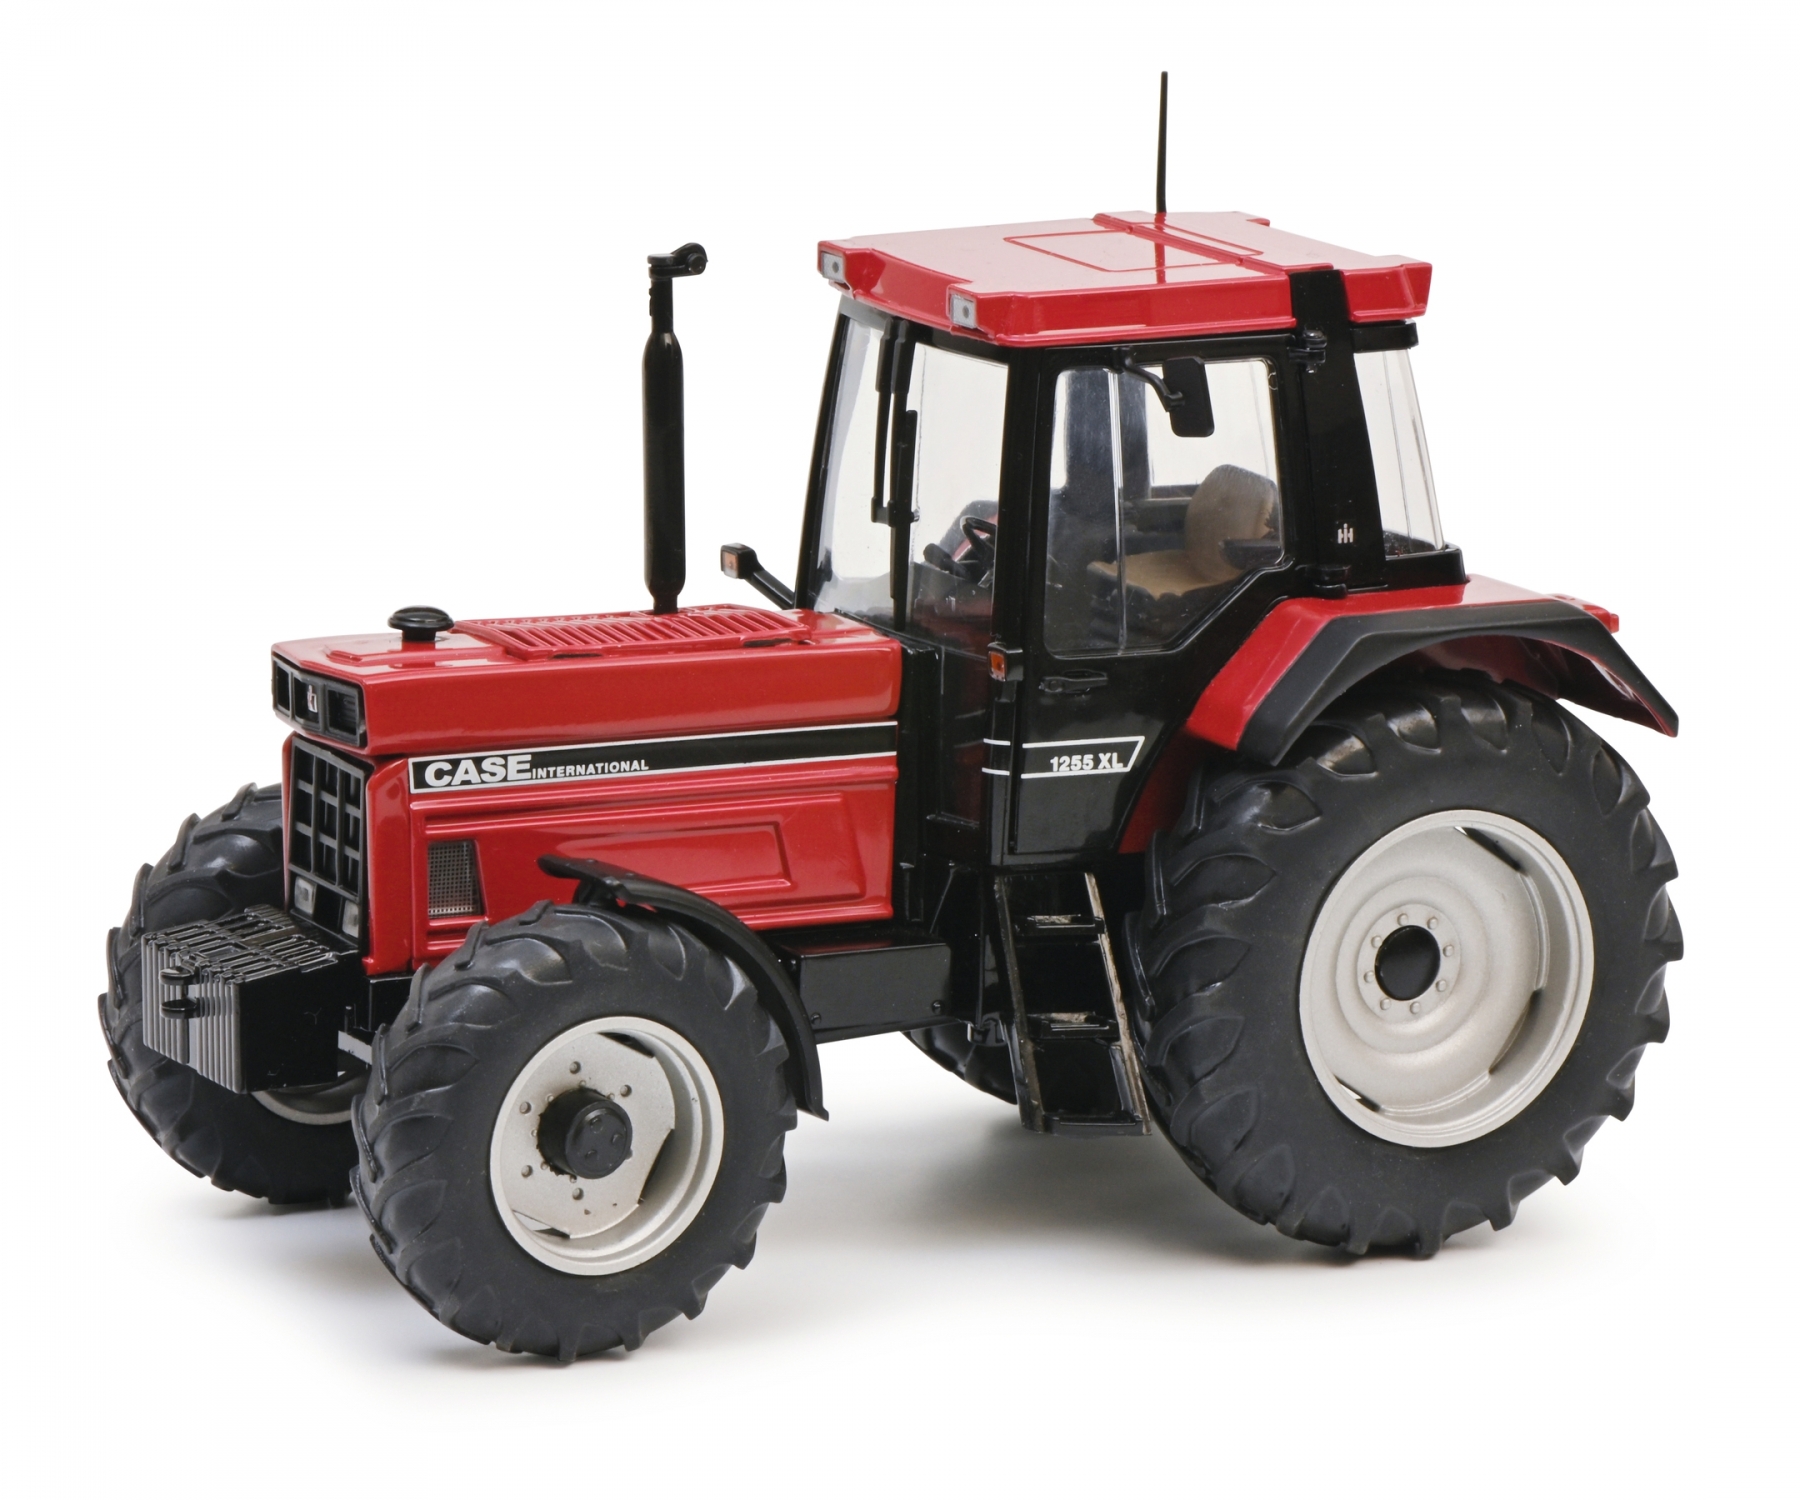  Schuco 450778700 Case 1255 XL rot Traktor 1:32